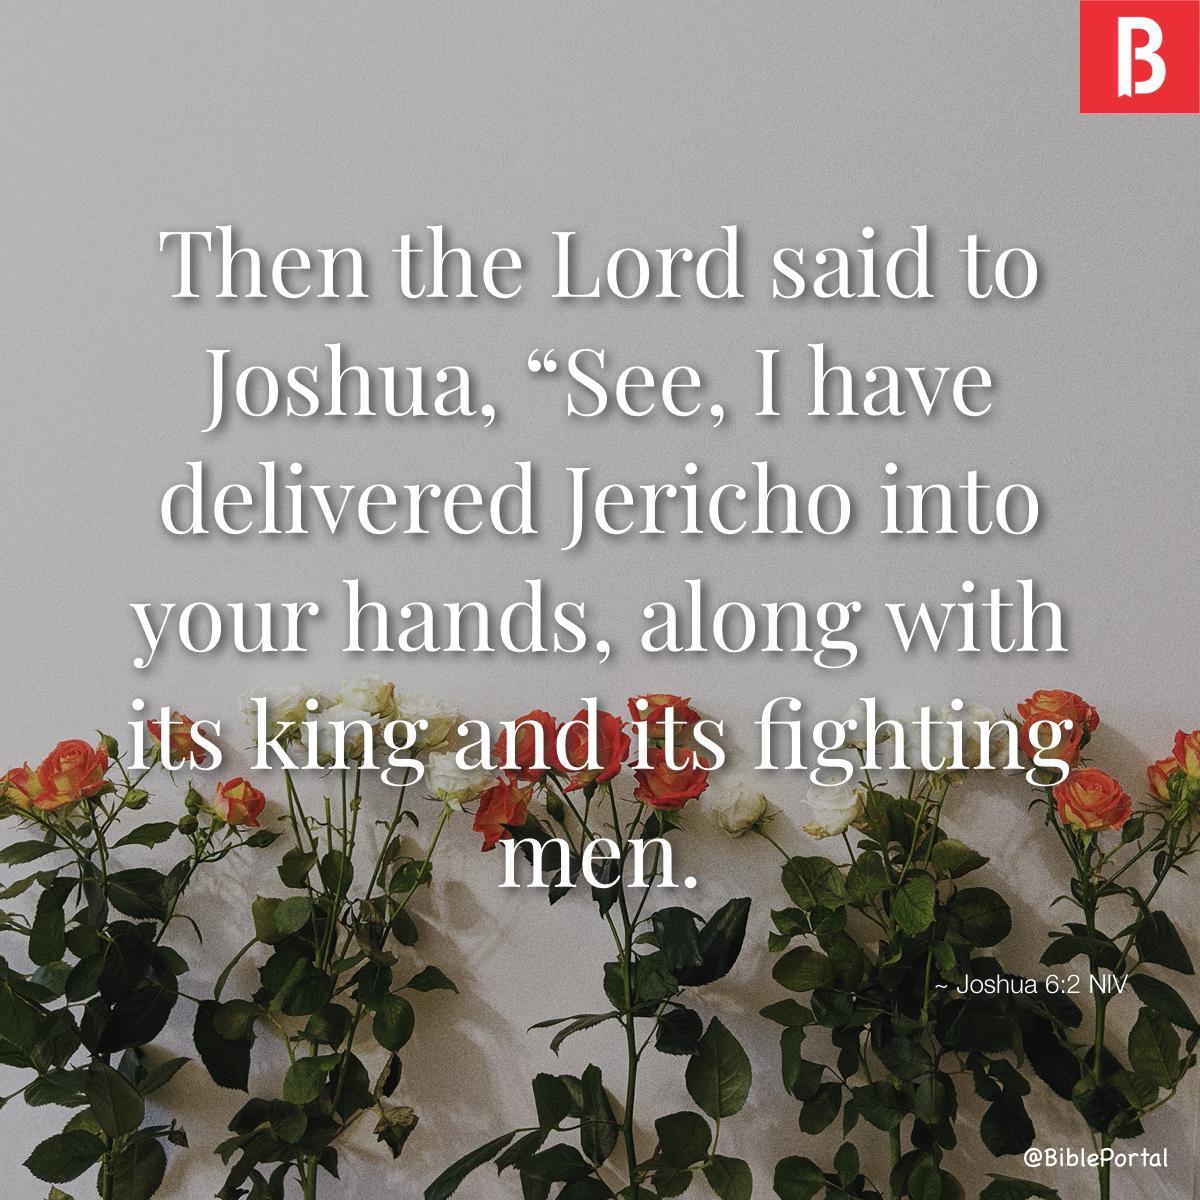 Joshua 6:2 NIV